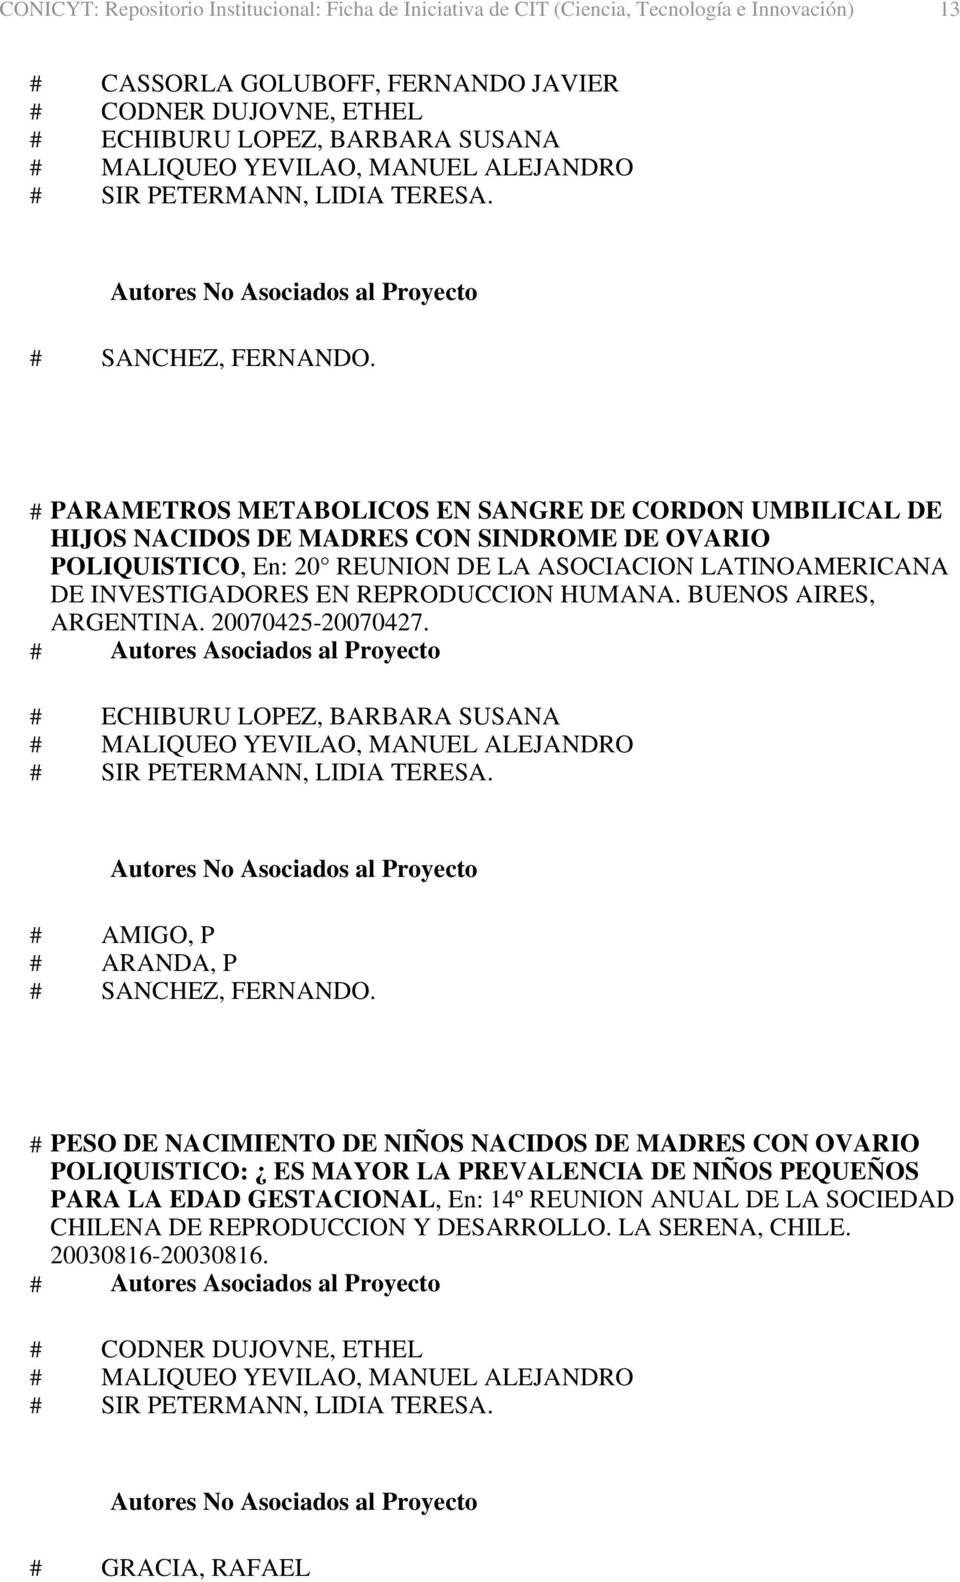 INVESTIGADORES EN REPRODUCCION HUMANA. BUENOS AIRES, ARGENTINA. 20070425-20070427. # AMIGO, P # ARANDA, P # SANCHEZ, FERNANDO.